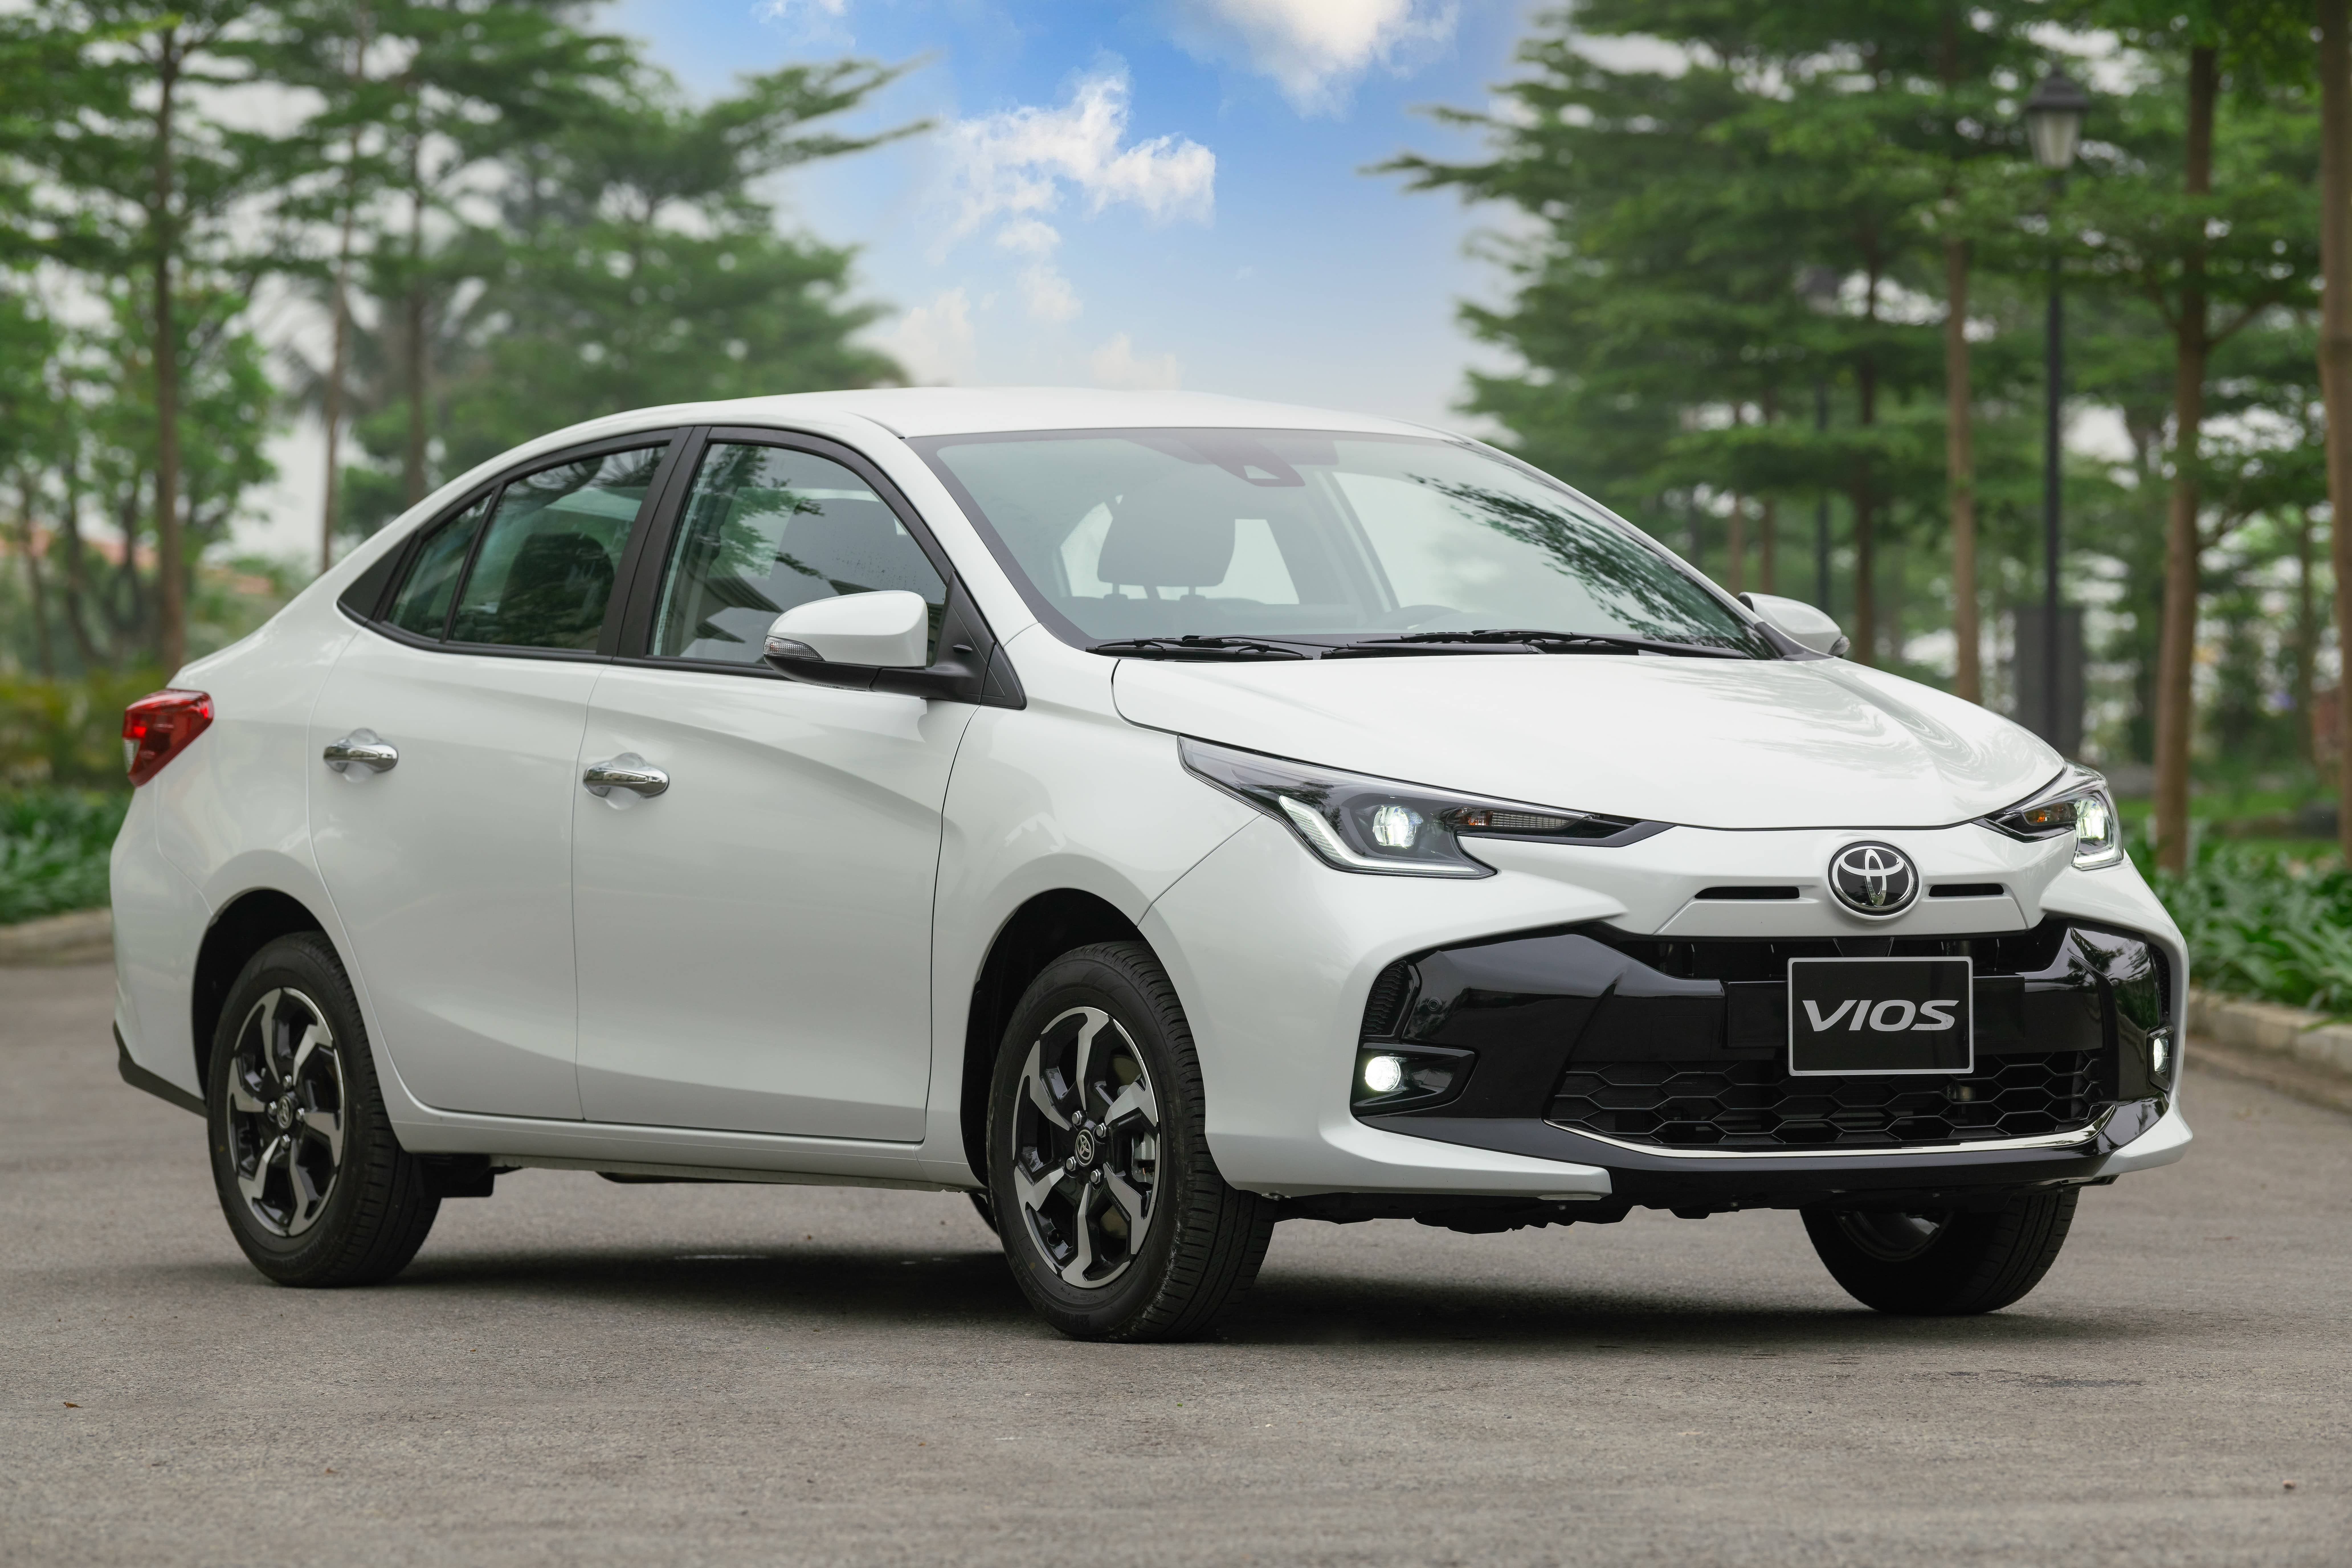 Trang tin tức mới nhất, nổi bật nhất về Toyota Việt Nam